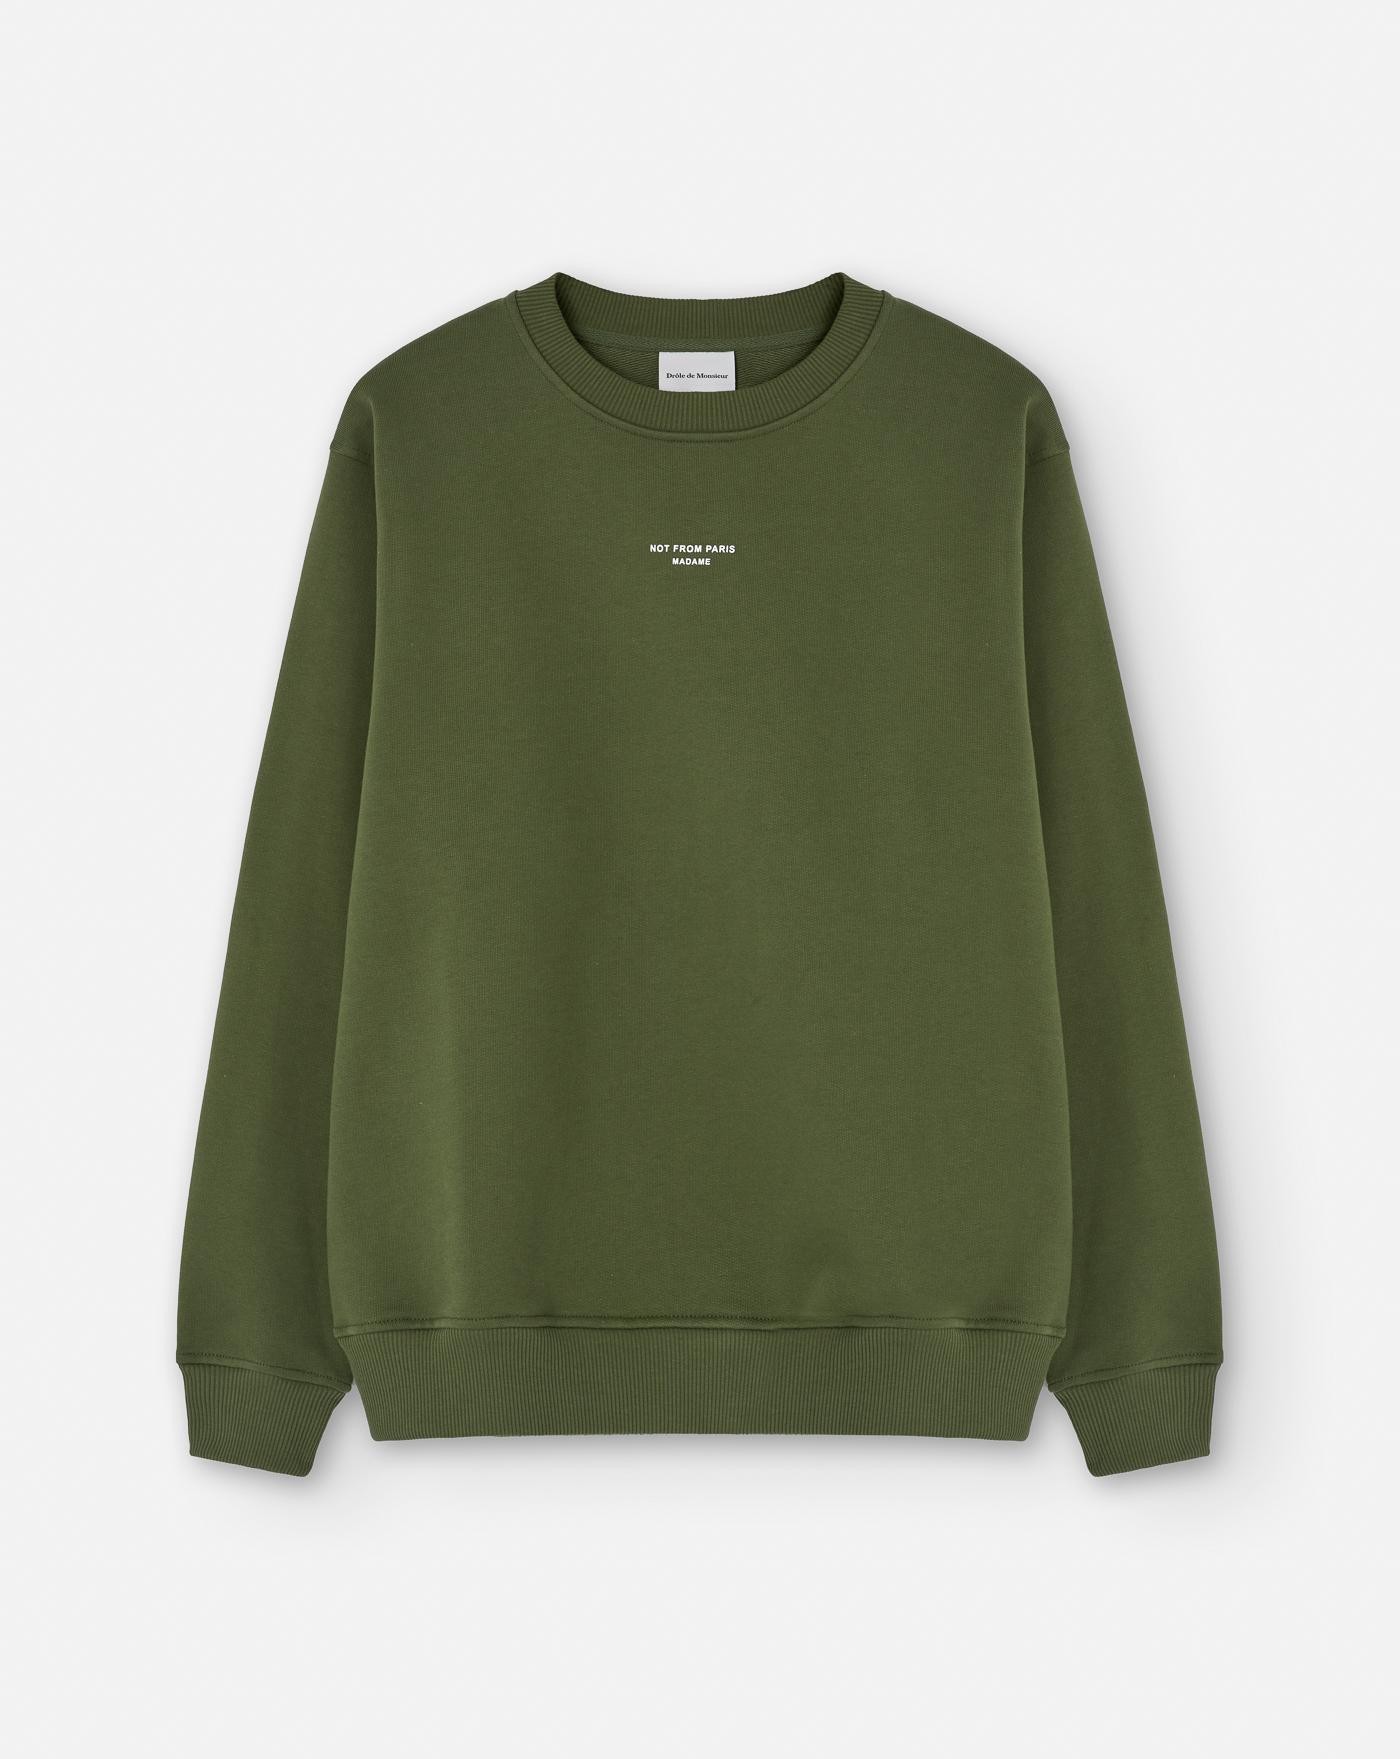 drole-de-monsieur-camiseta-le-classique-sweatshirt-green-verde